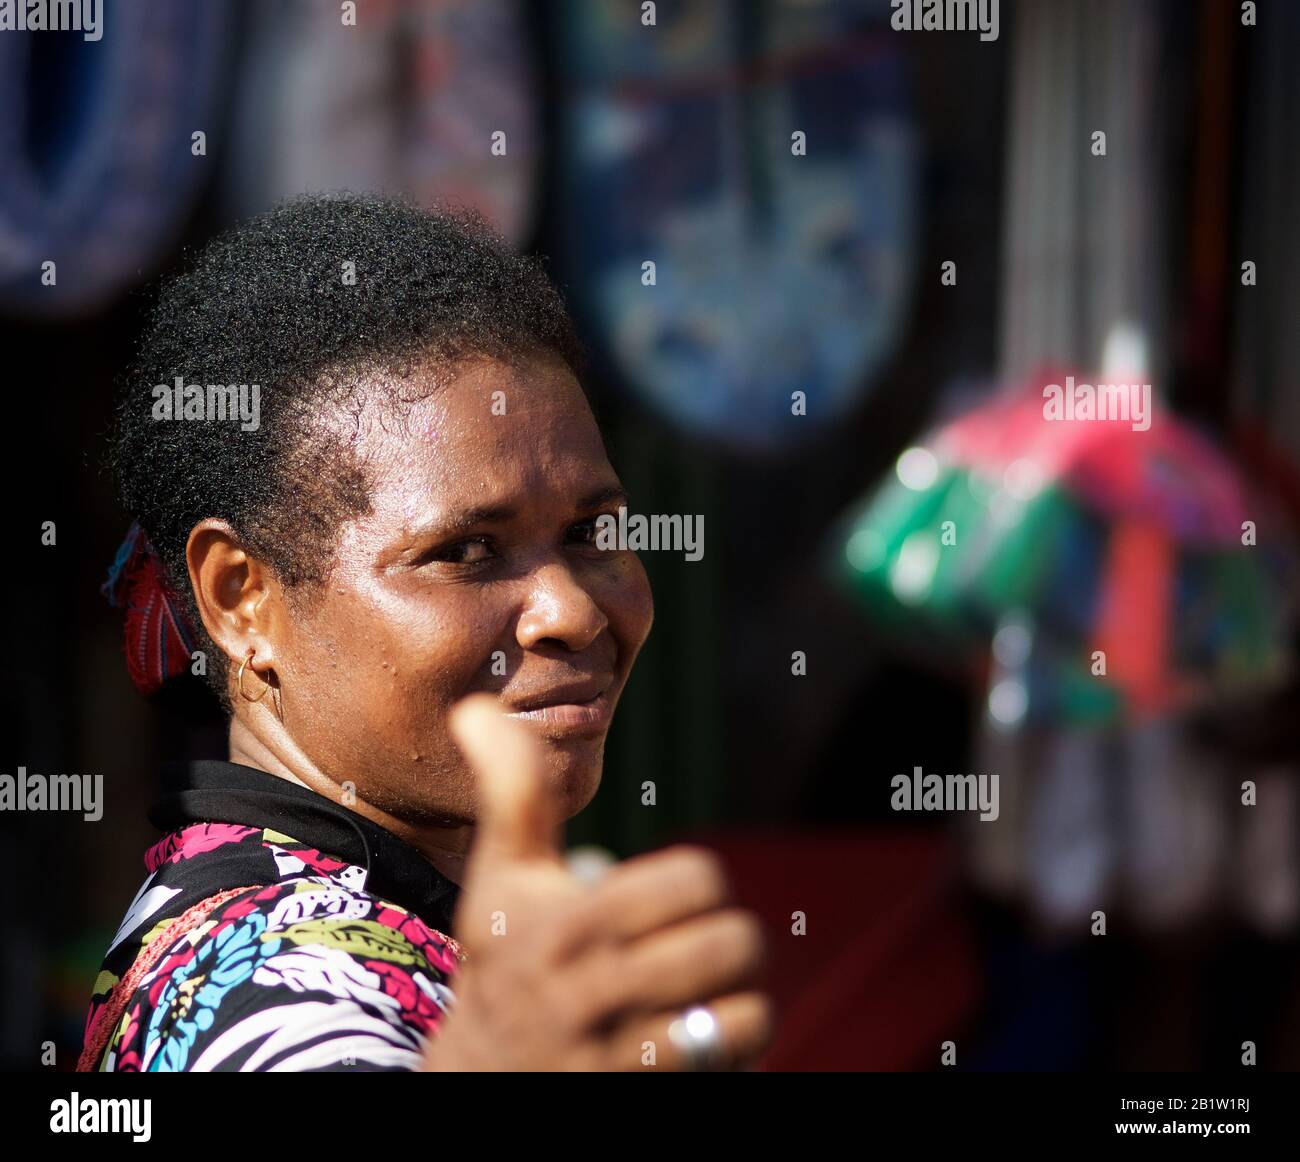 Papua-Frau-Verkäufer, die auf dem Pasar Reimu Markt in Sorong - Occidental Papua, Indonesien, arbeitet Stockfoto